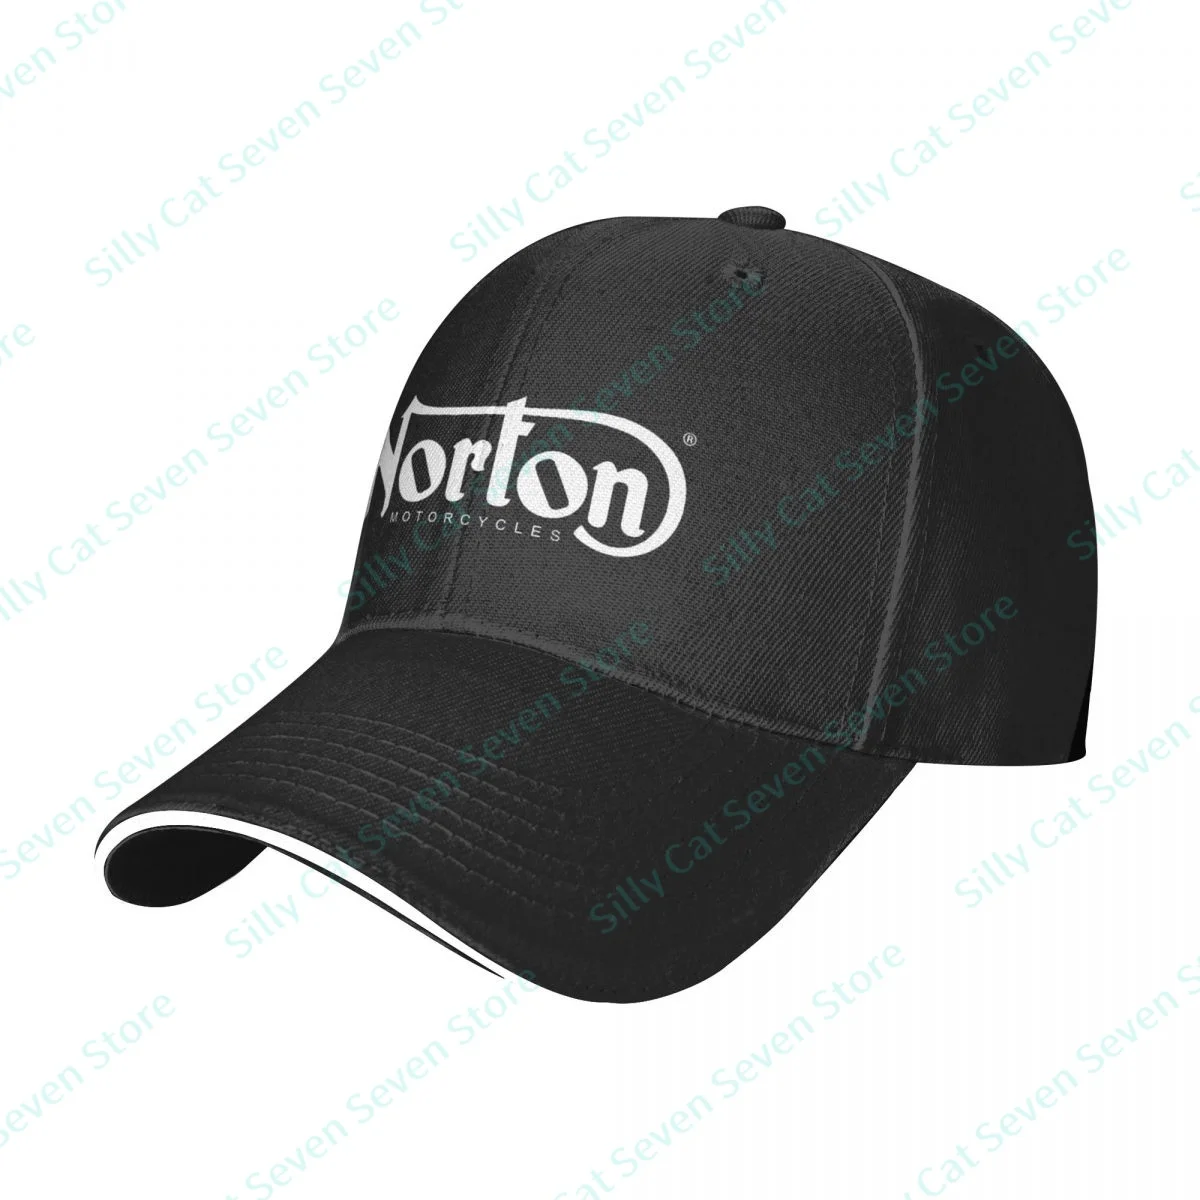 אישית נורטון מגניב לשני המינים כובע בייסבול למבוגרים מתכוונן אבא כובע גברים, נשים, היפ הופ חיצונית נשים גברים'0